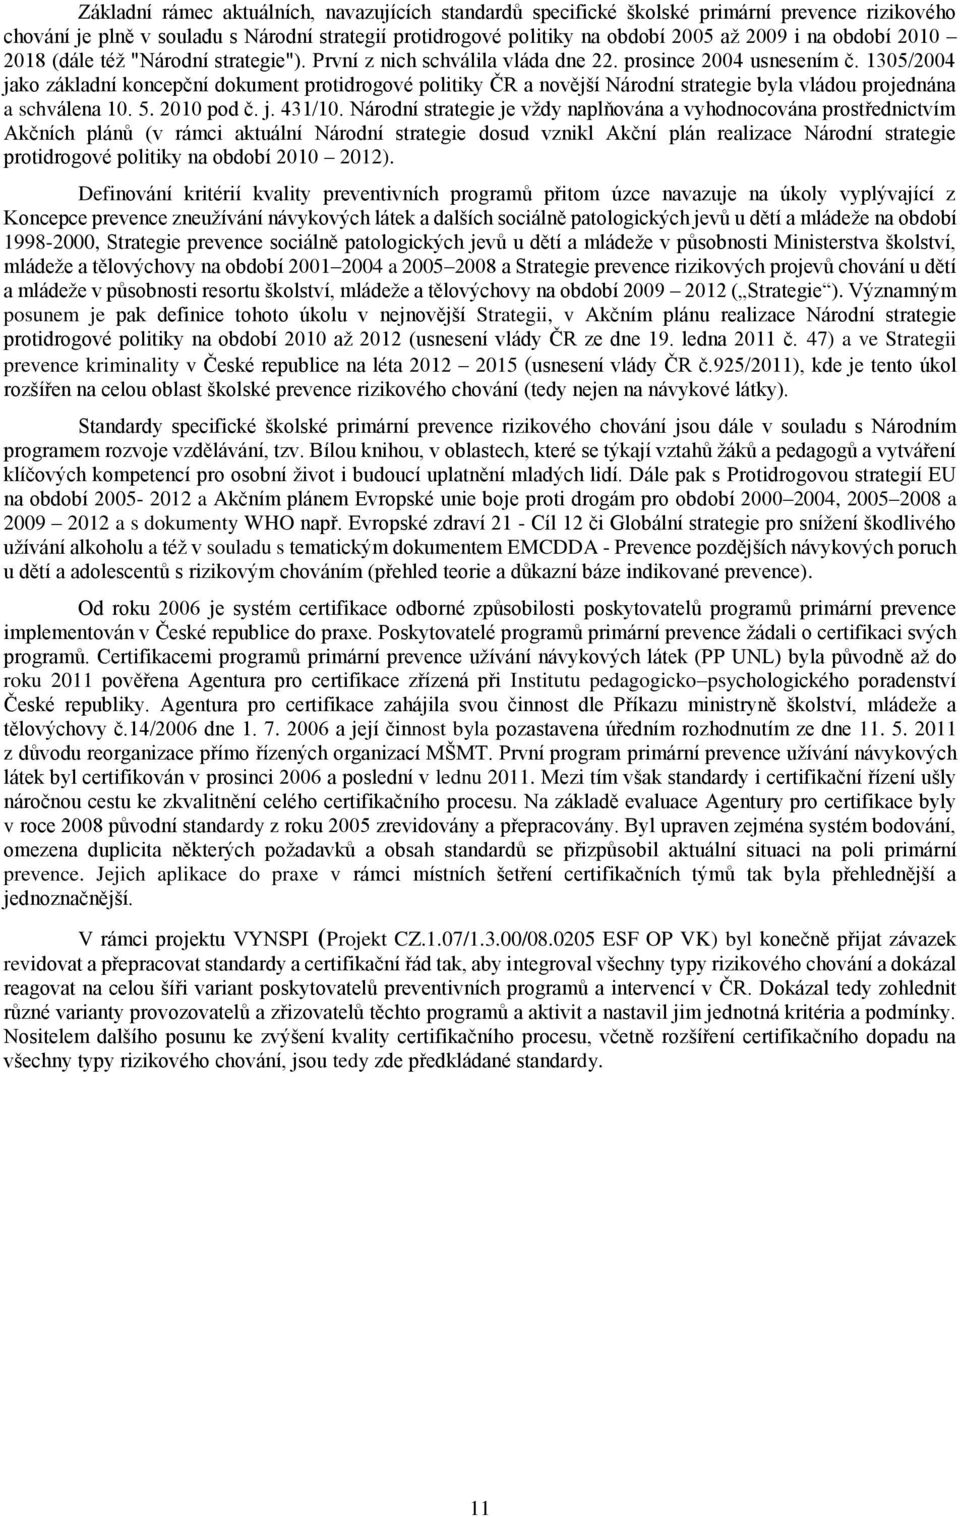 1305/2004 jako základní koncepční dokument protidrogové politiky ČR a novější Národní strategie byla vládou projednána a schválena 10. 5. 2010 pod č. j. 431/10.